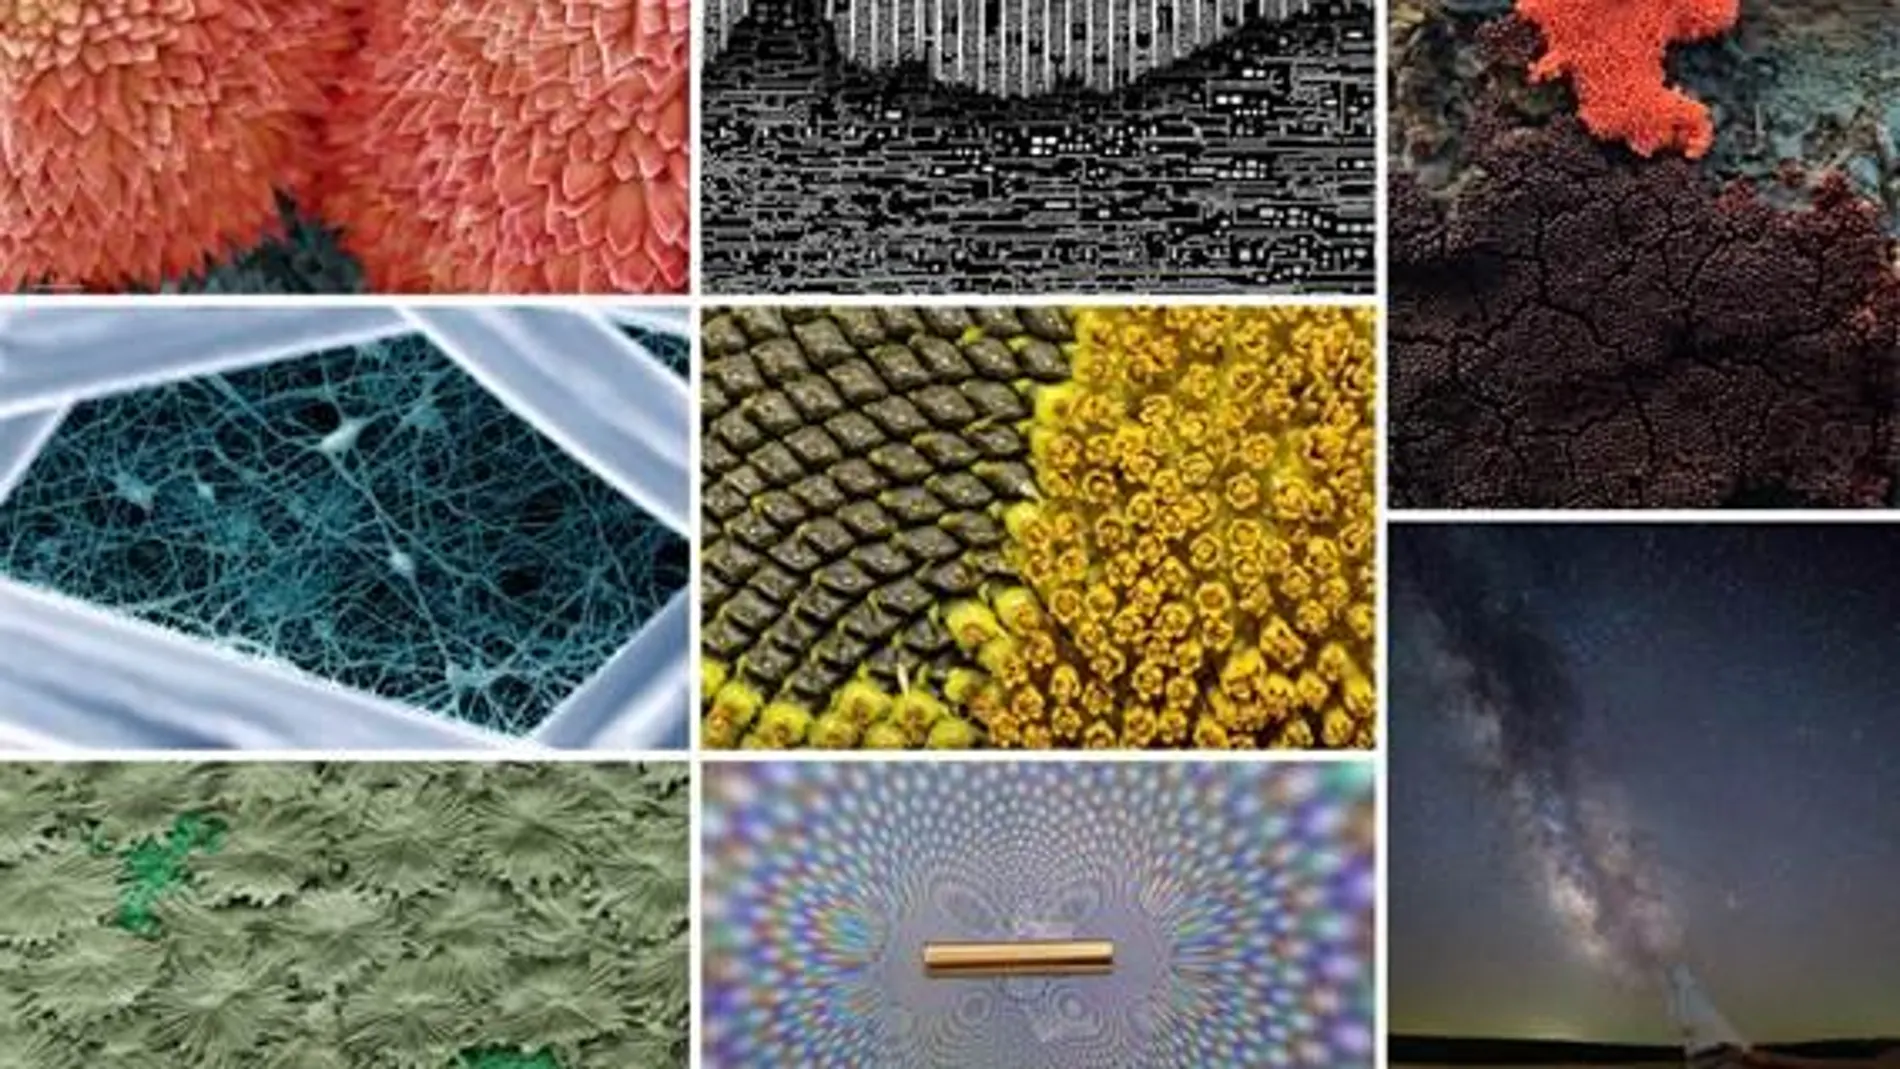 De izquierda a derecha y de arriba abajo: "Ser o no ser", "Jeroglíficos del microprocesador", "Volcán de mixomicetos", "Pequeña Gran Muralla", "Metamorfosis floral", "El bosque de parasoles", "El arcoíris digital" y "Todo es polvo de estrellas"